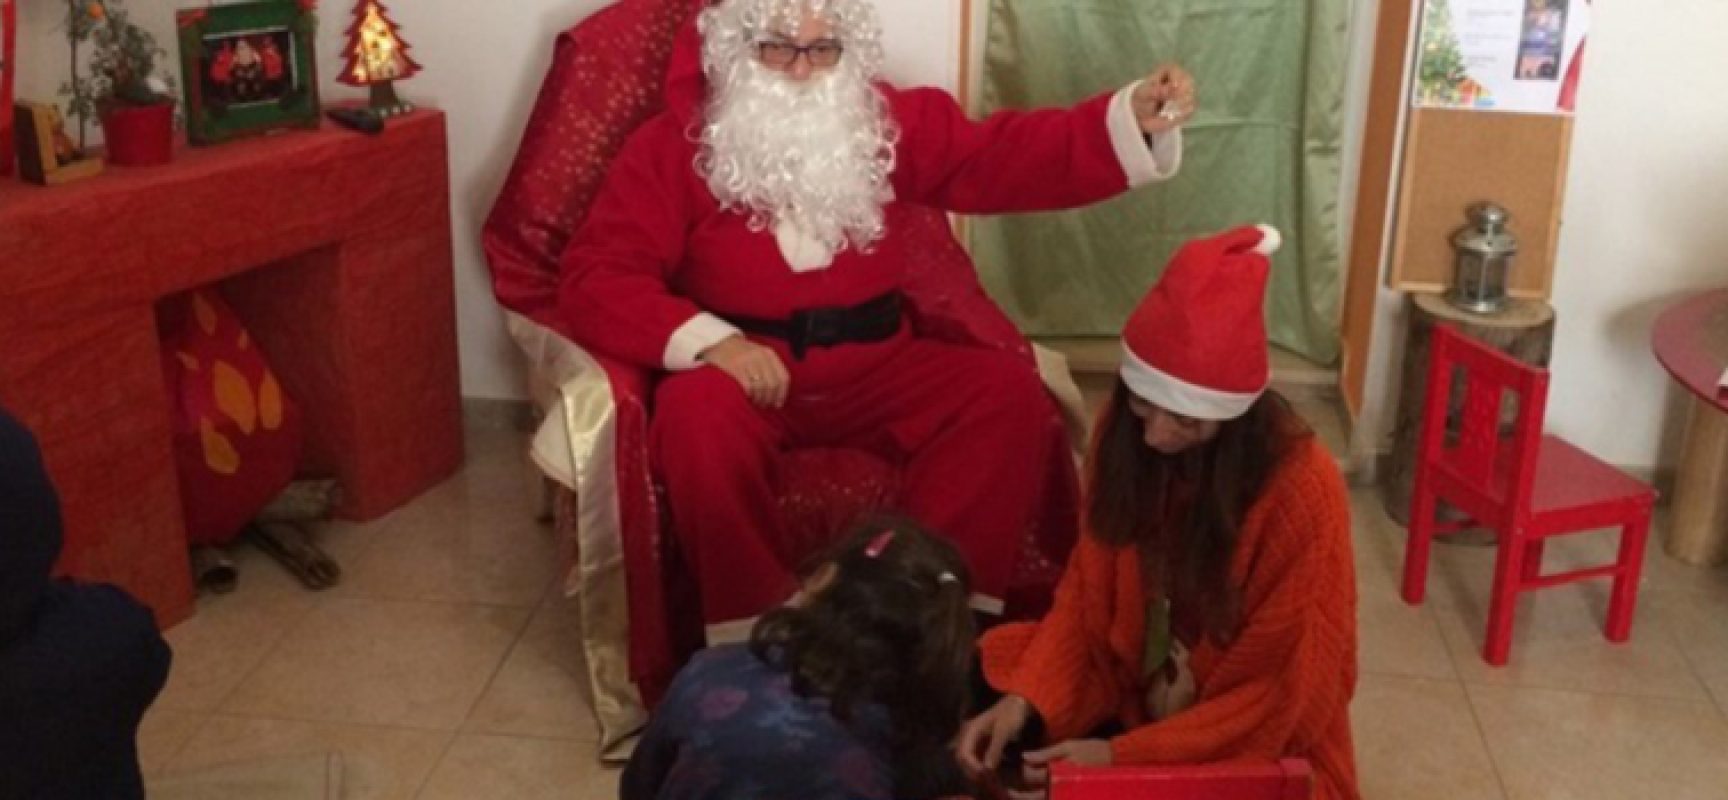 Scrivere la letterina insieme a Babbo Natale, nella sua casa: l’iniziativa di “Viale dei Ciliegi,17”